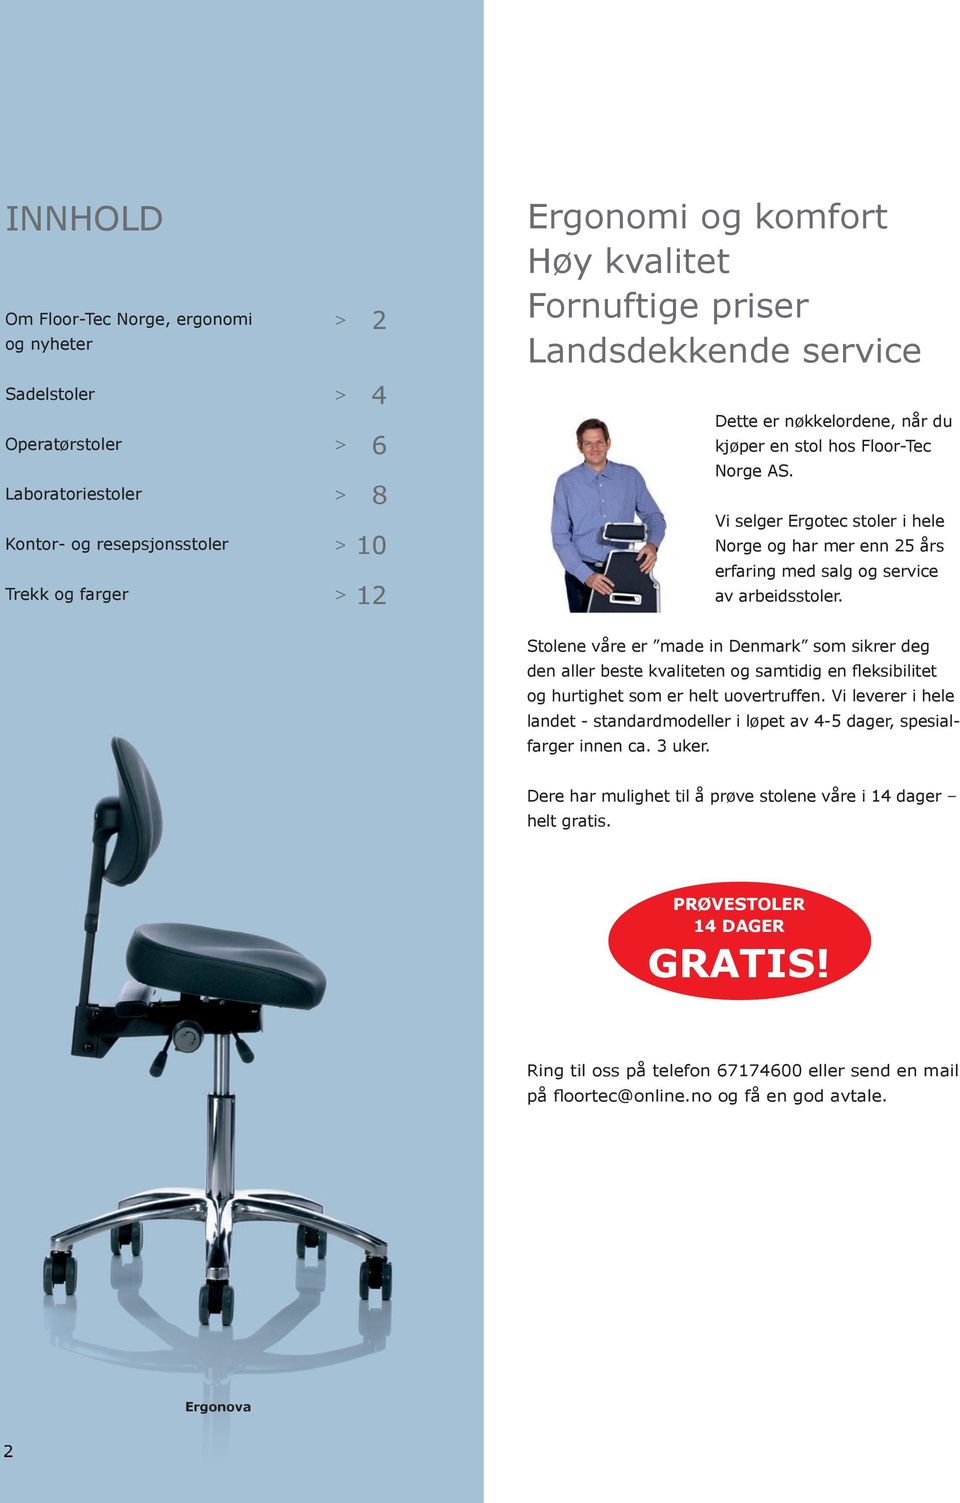 Vi selger Ergotec stoler i hele Norge og har mer enn 25 års erfaring med salg og service av arbeidsstoler.